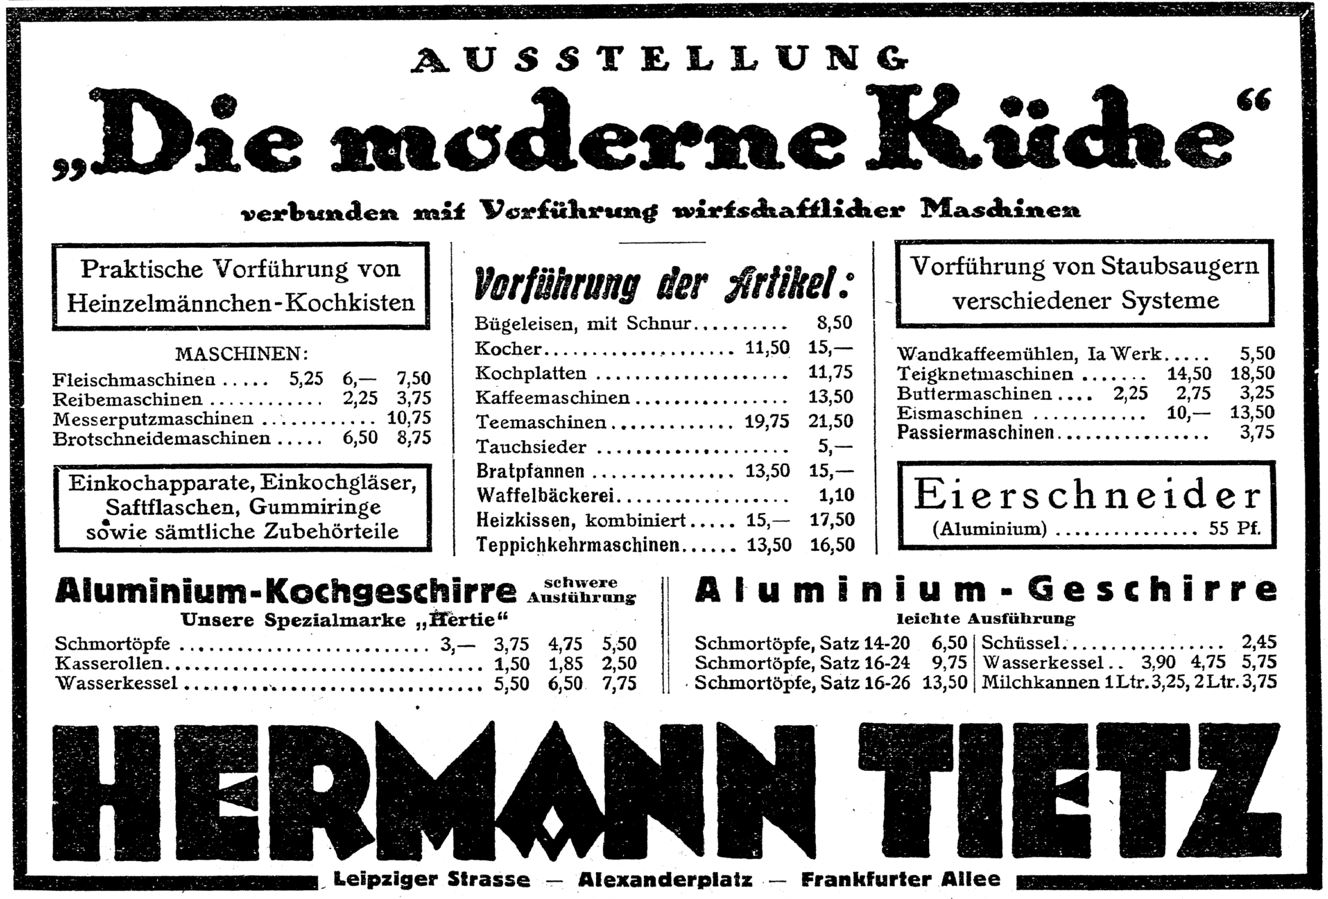 36_C.V.-Zeitung_03_1924_p271_Warenhaus_Haushaltsgeraete_Kochkiste_Heinzelmaennchen_Elektrogeraete_Hermann-Tietz_Ausstellung_Hertie